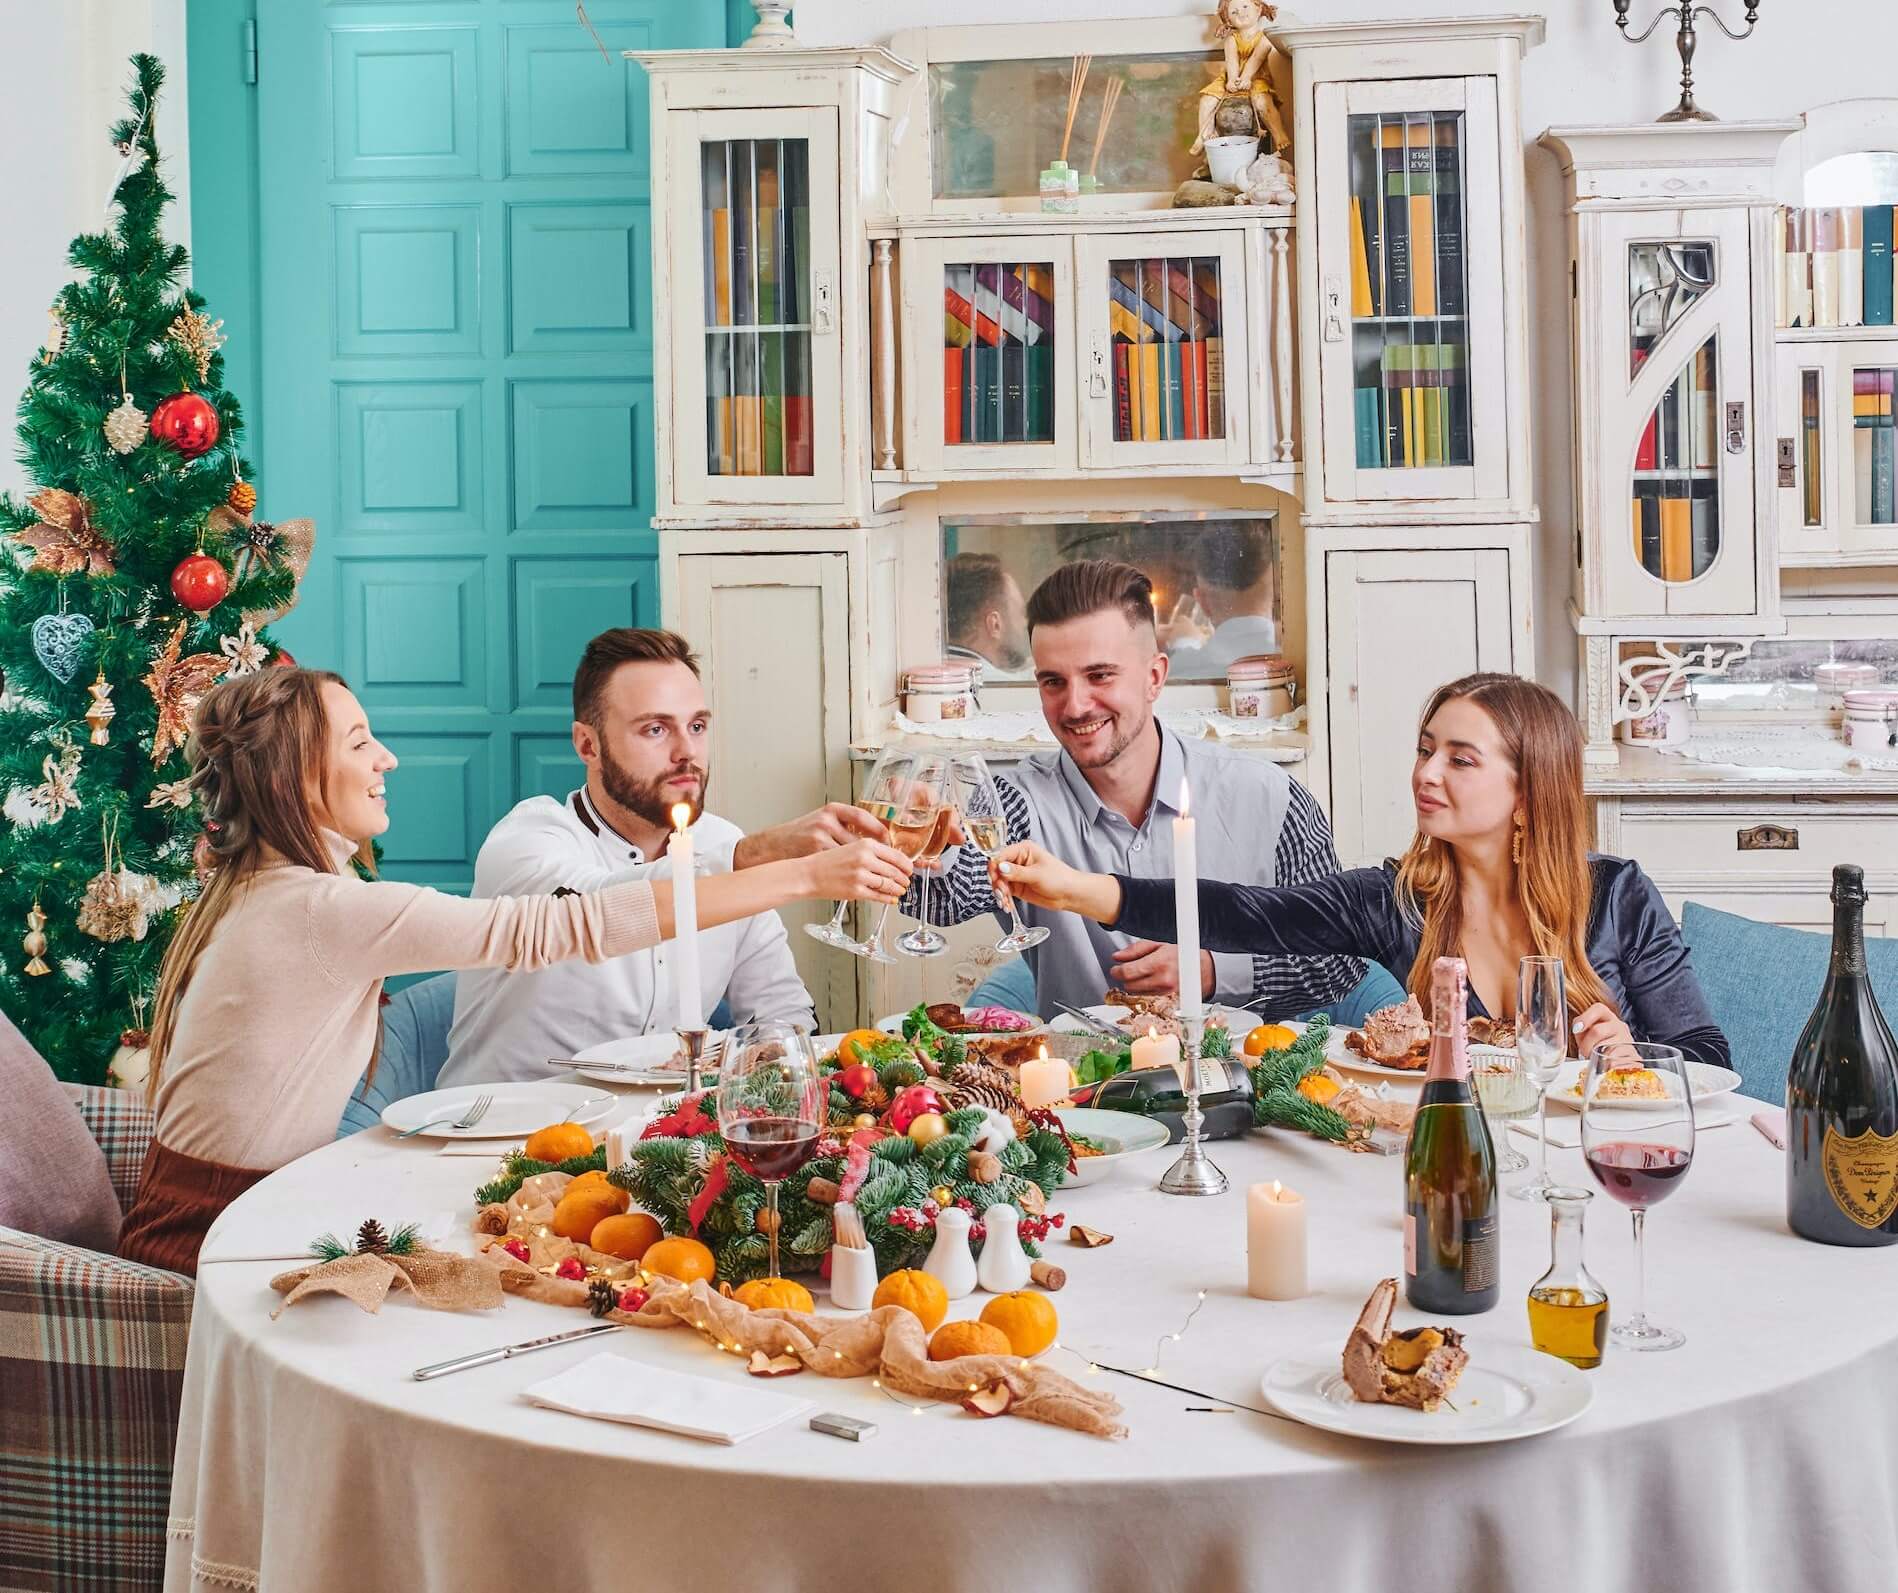 Mesés étkezők, ahol mi is szívesen látnánk vendégeket egy karácsonyi vacsorára